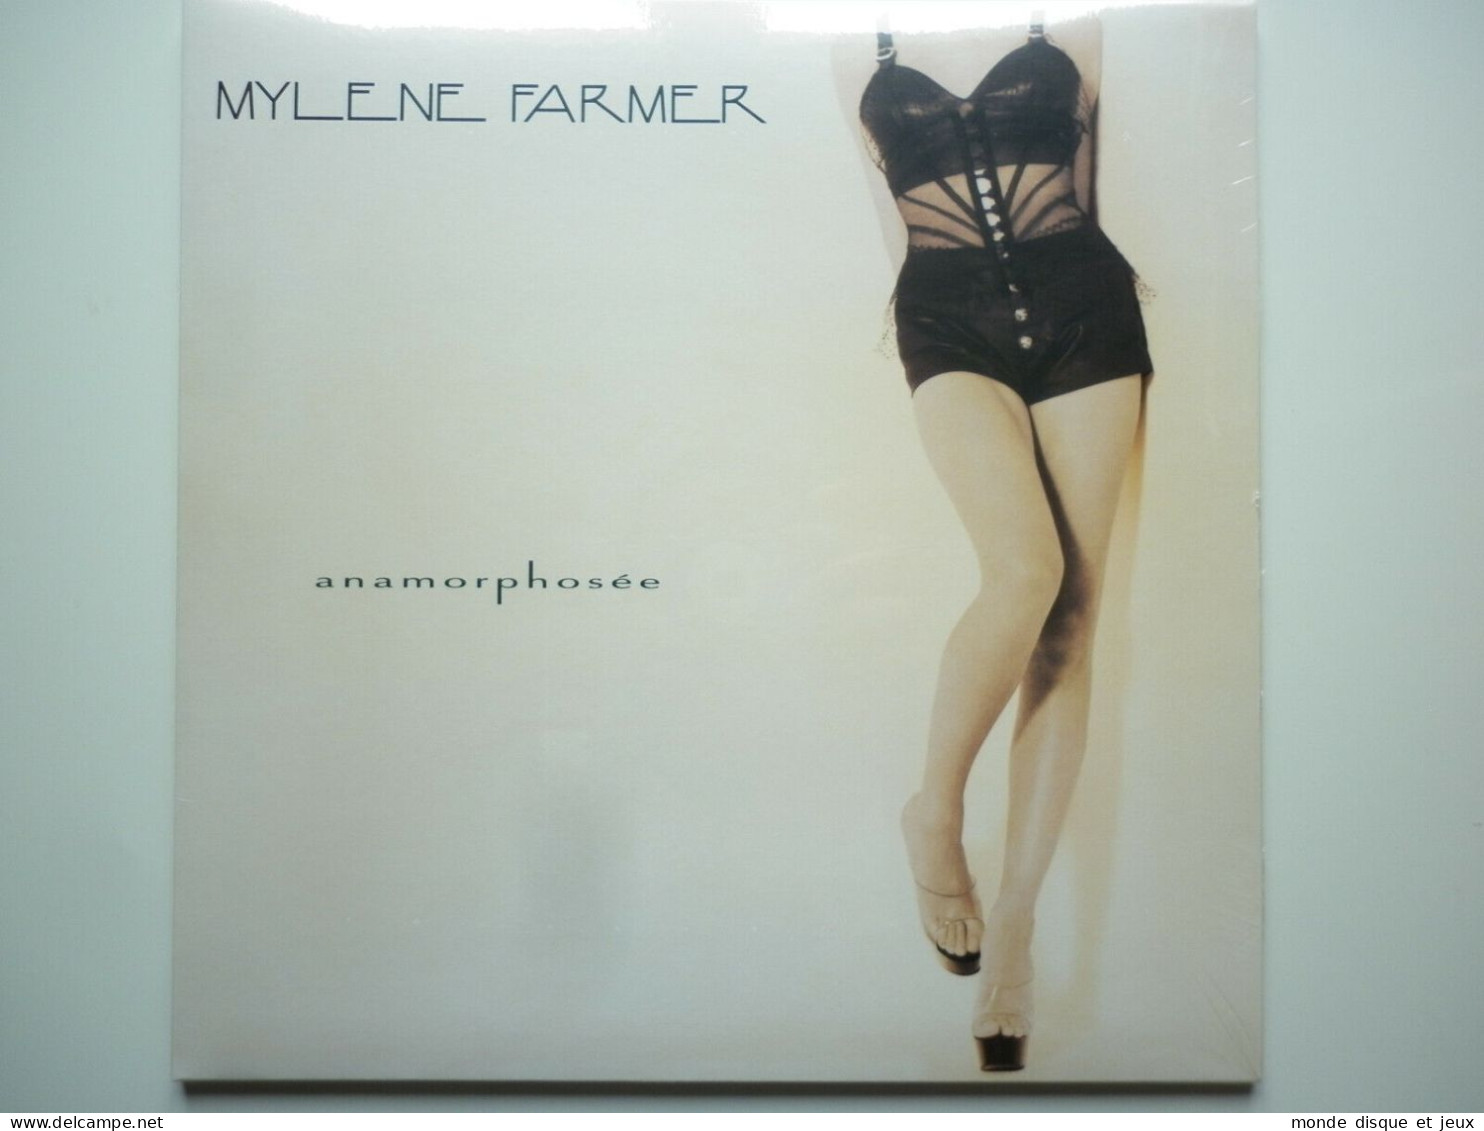 Mylene Farmer Album 33Tours Anamorphosée Exclusivité Vinyle Couleur Rouge Splatter - Autres - Musique Française